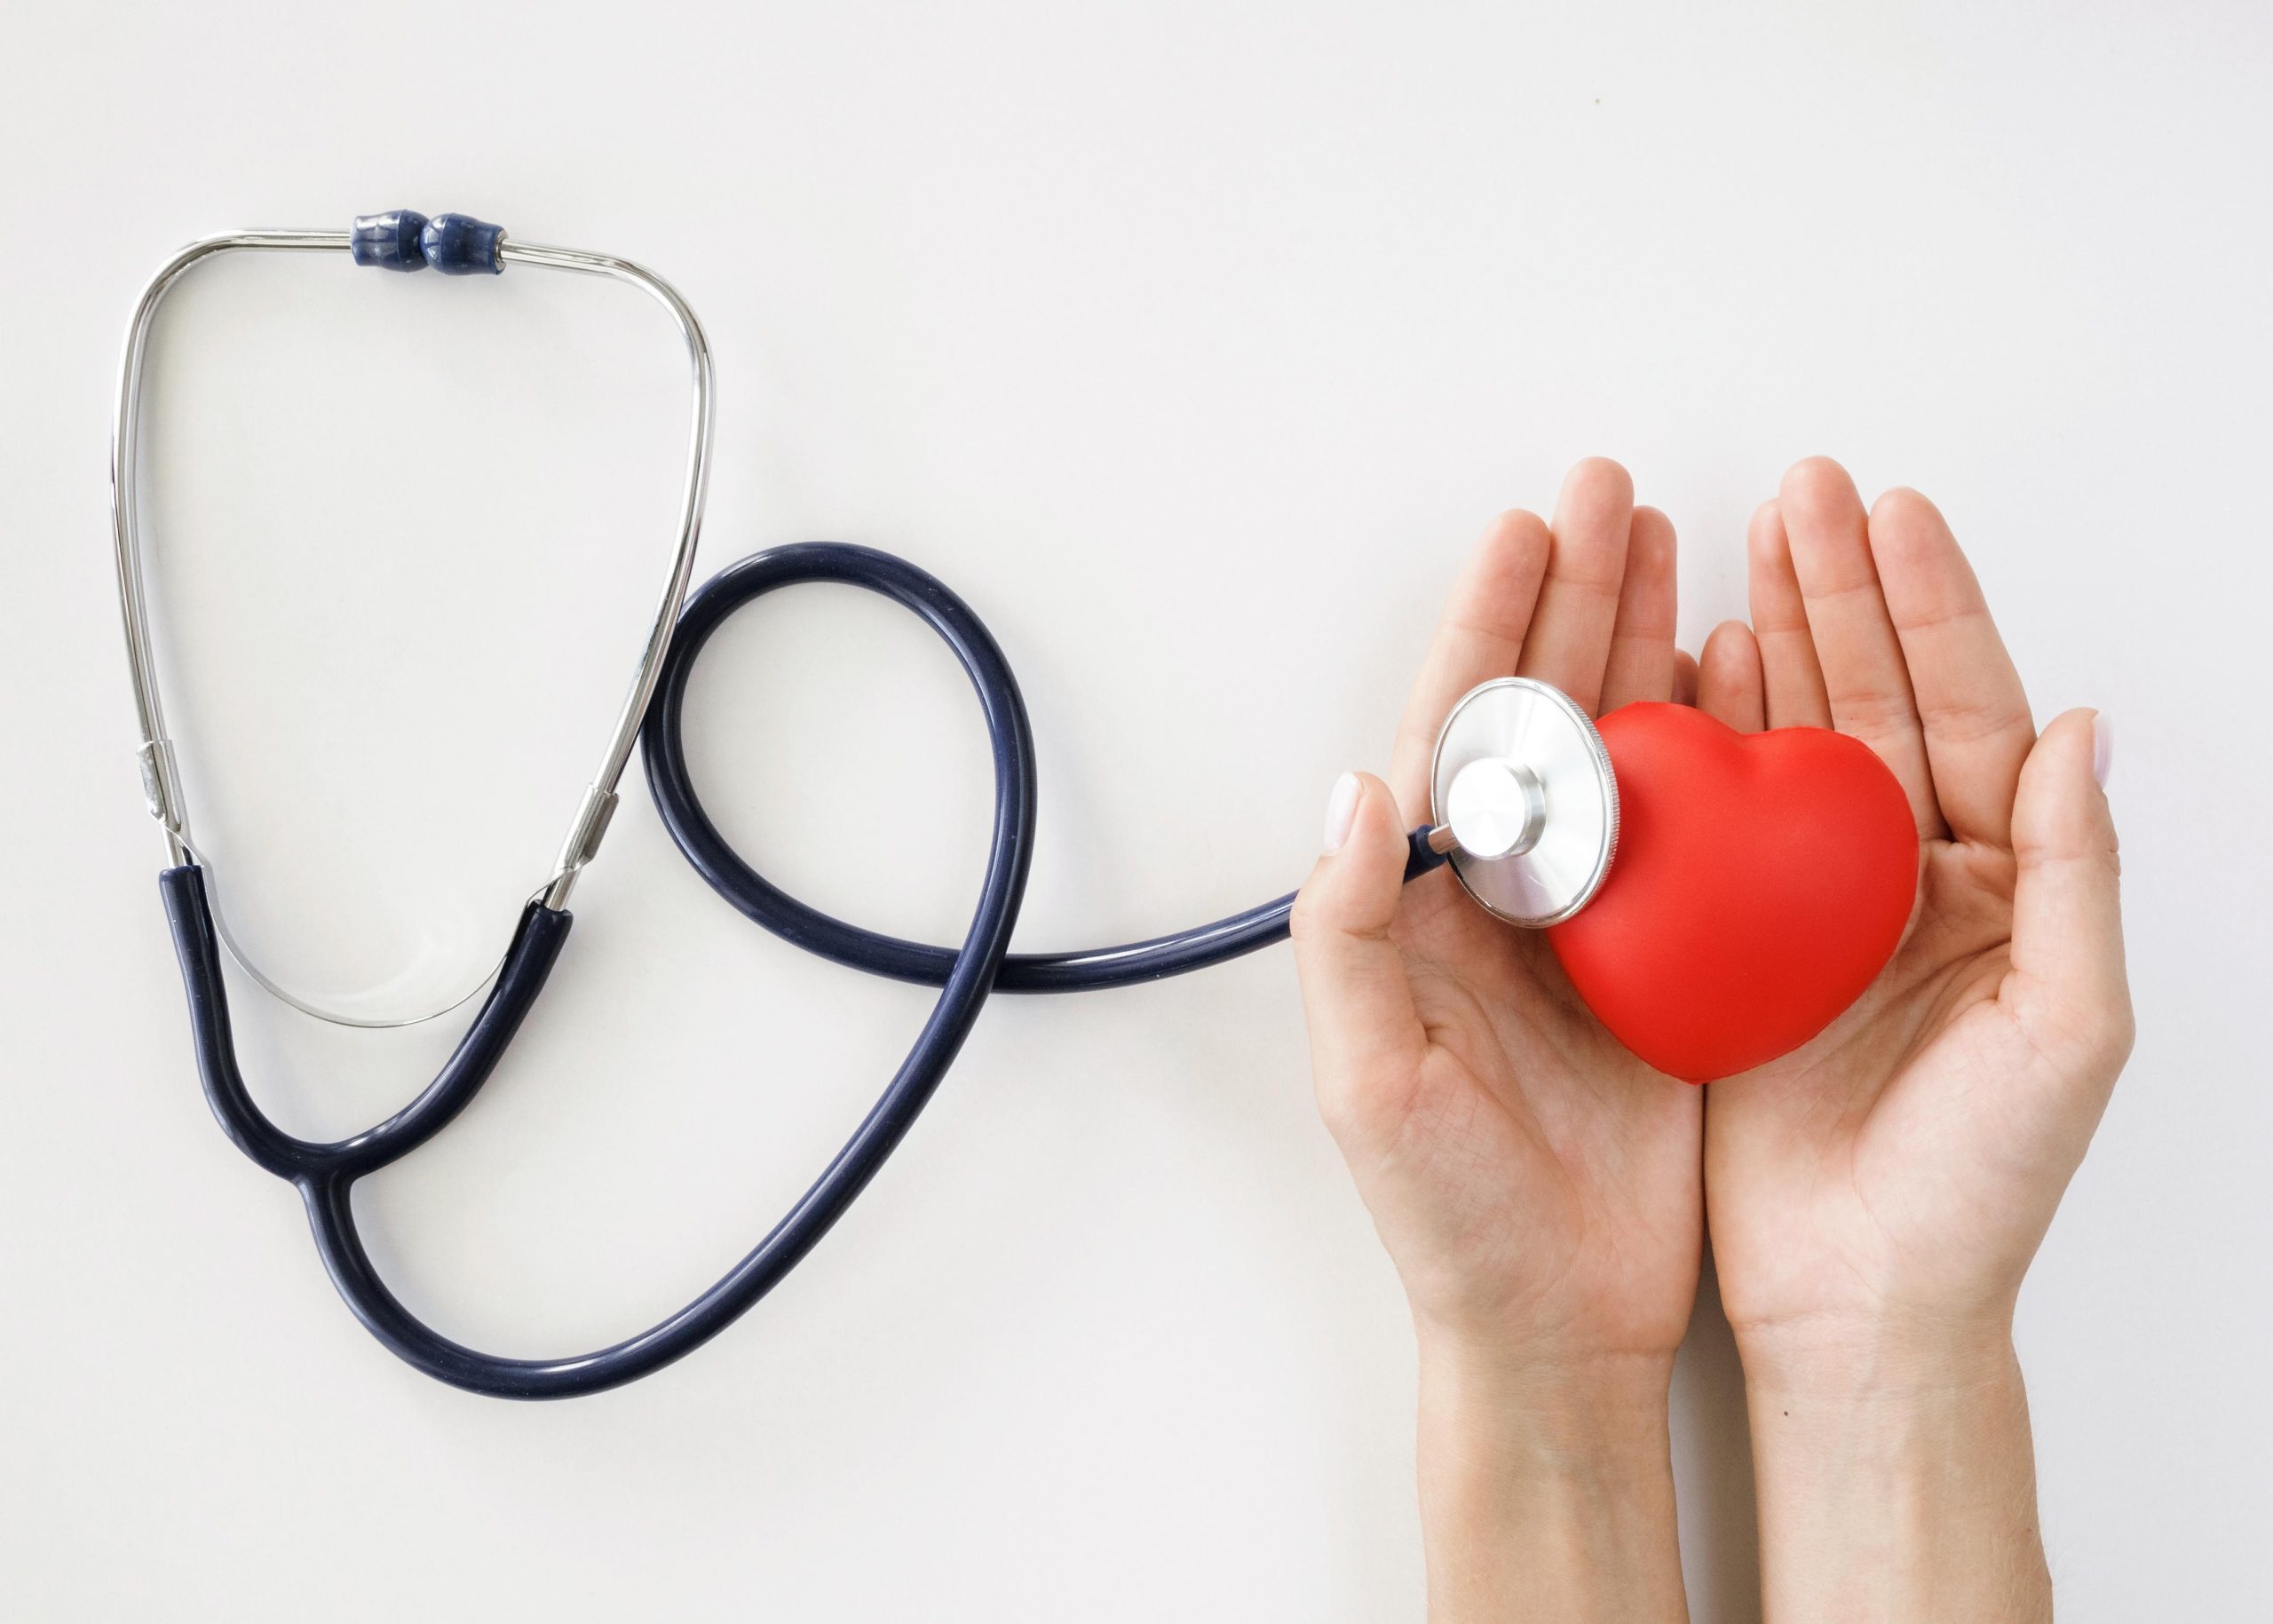 La Unidad de Cardiología de la Clínica HLA Vistahermosa celebra su 30 aniversario en el Día Mundial del Corazón